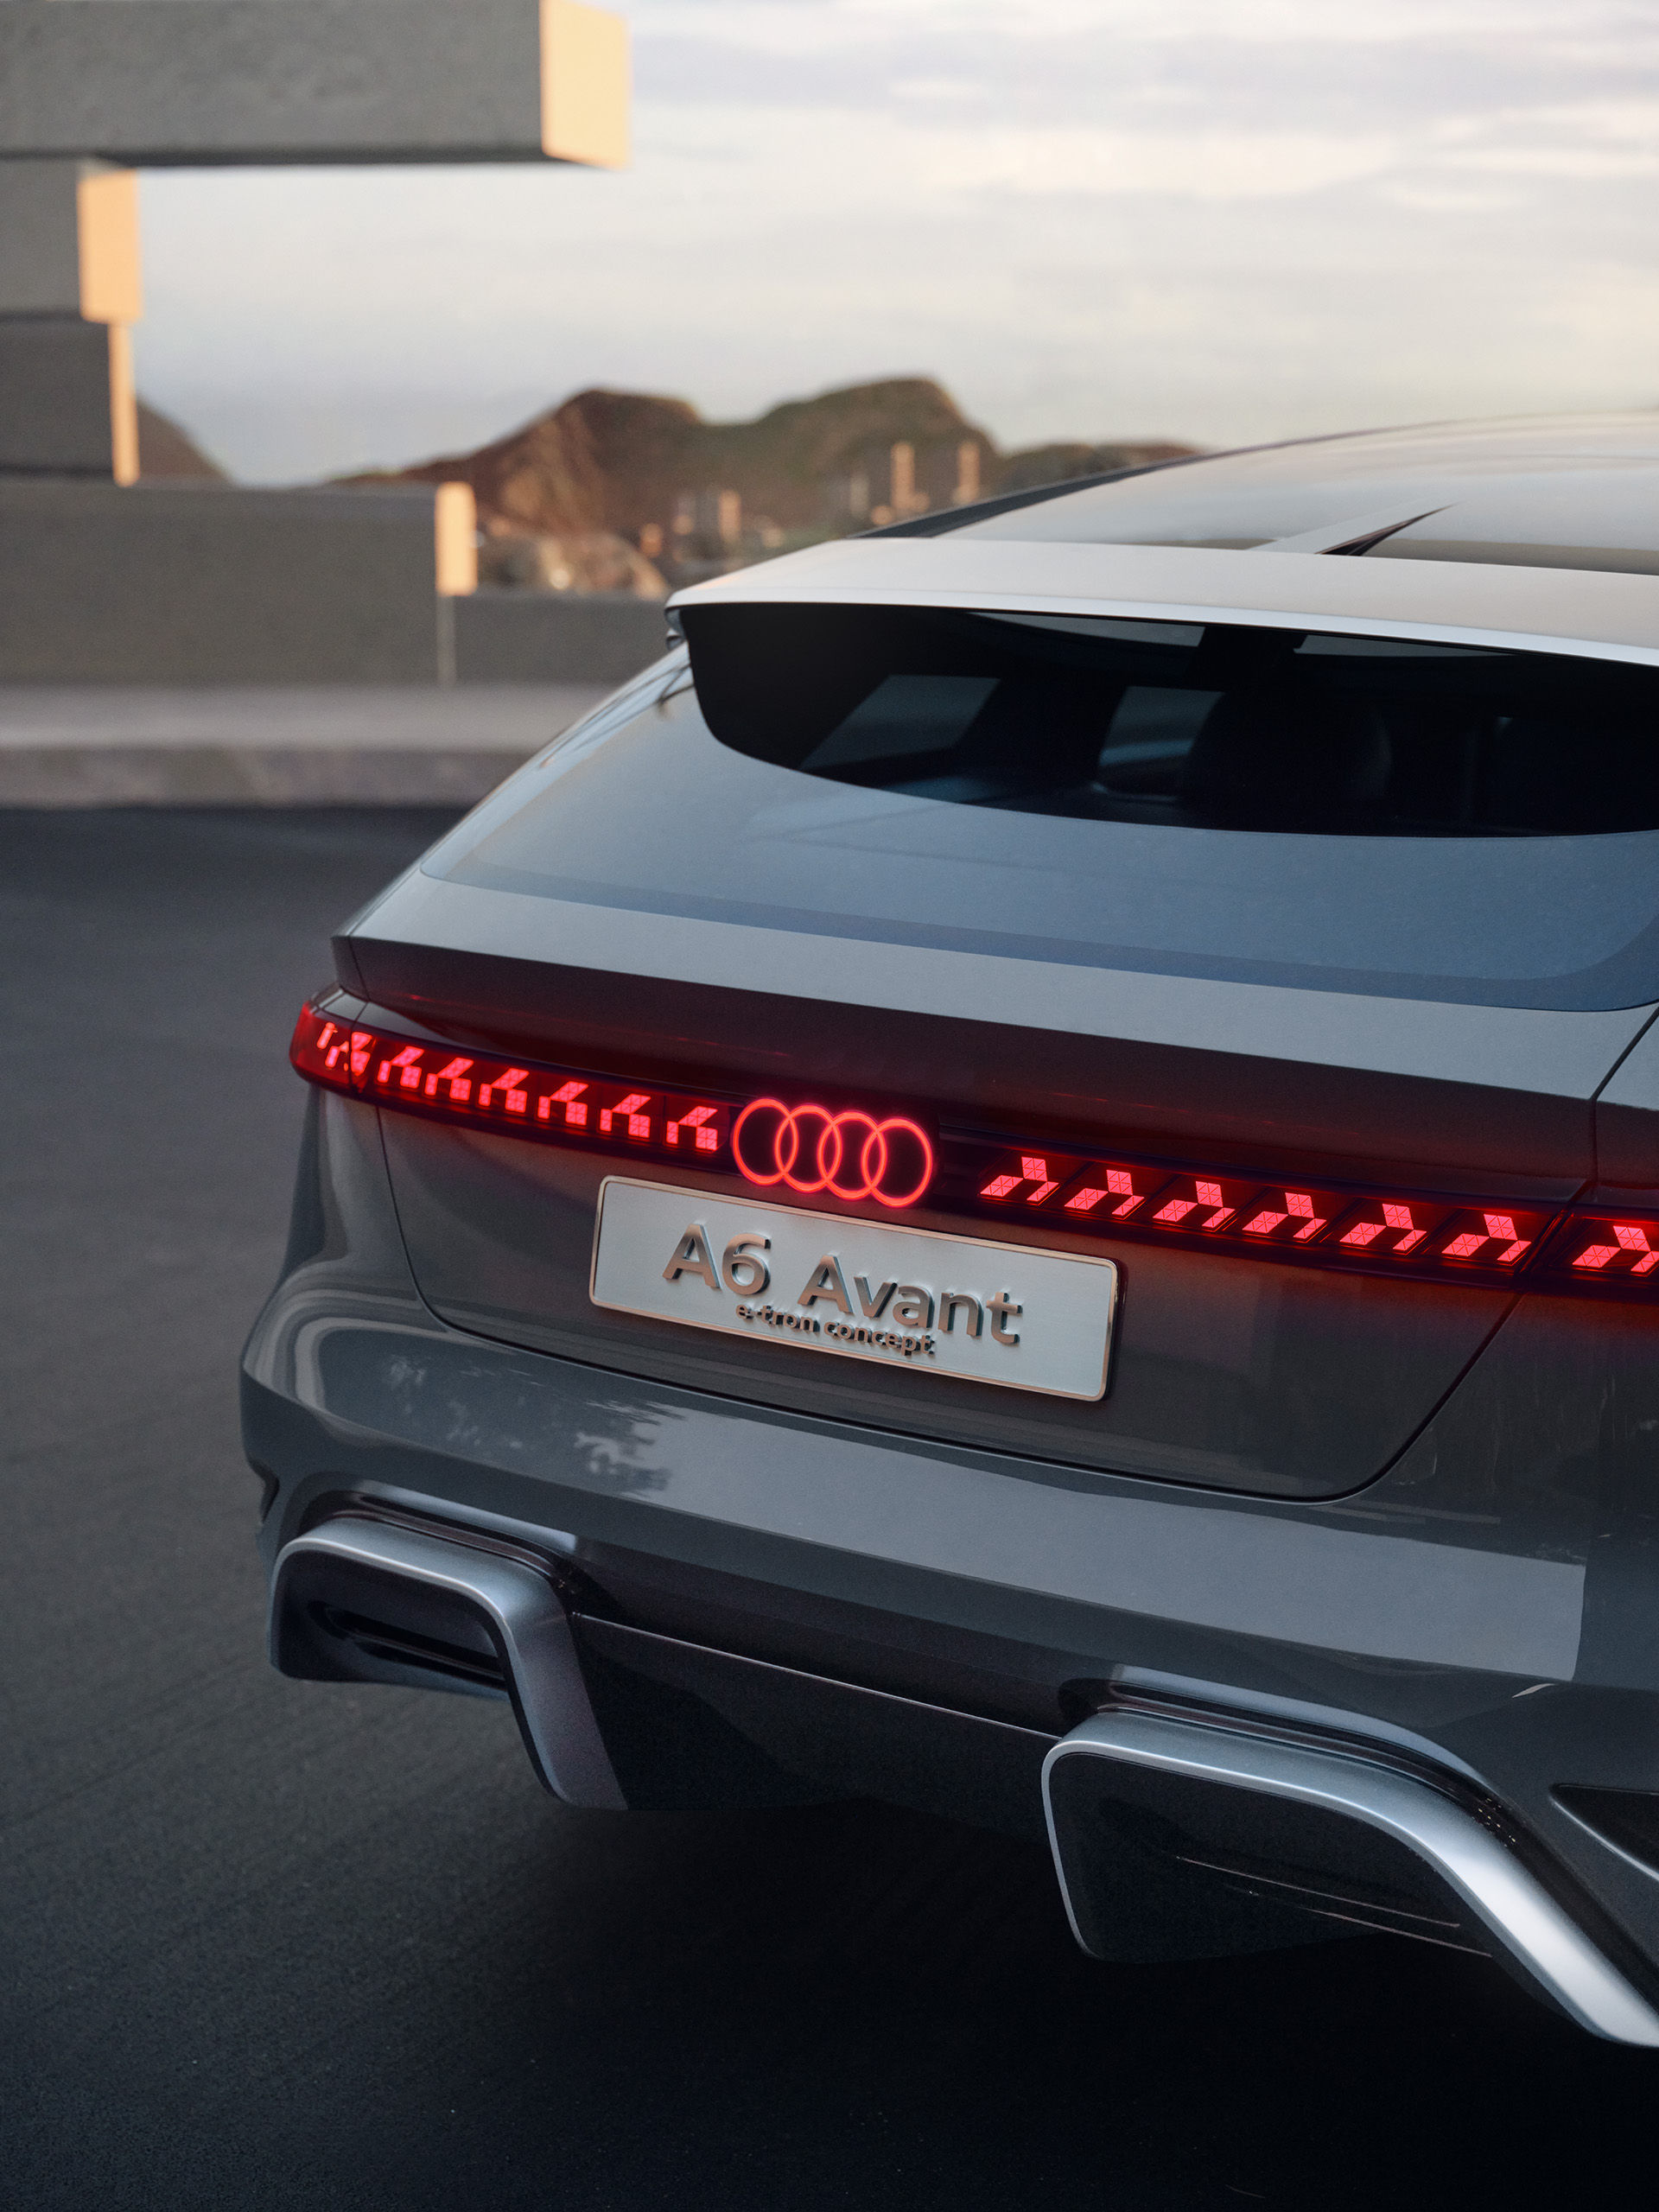 Lysbåndet på hekken til Audi A6 Avant e-tron concept.